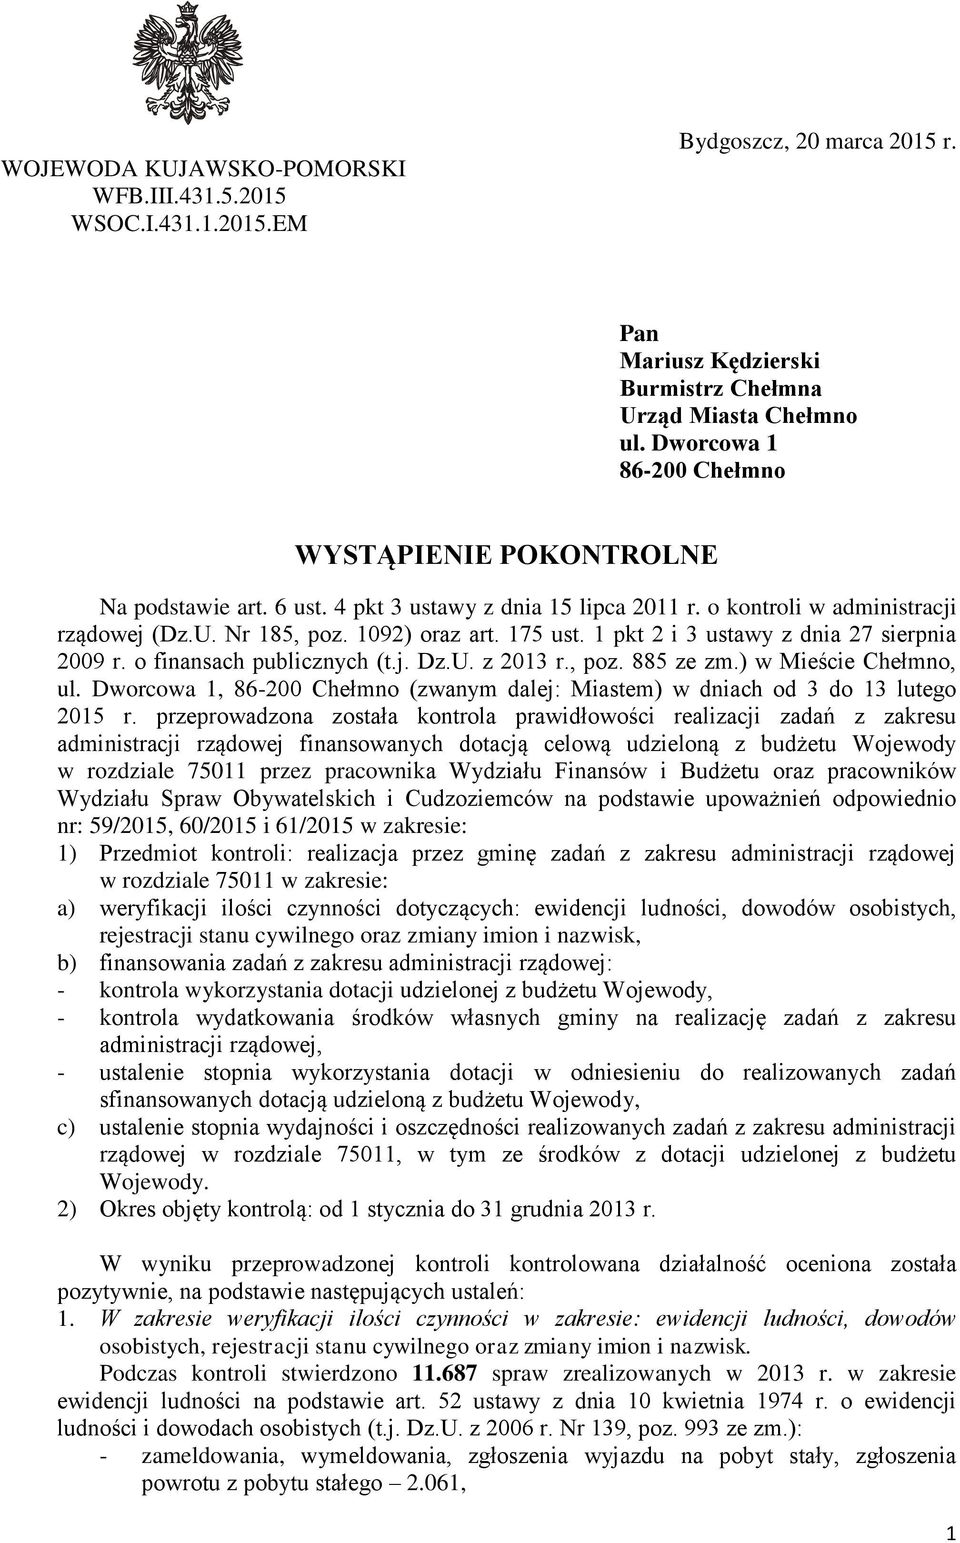 1 pkt 2 i 3 ustawy z dnia 27 sierpnia 2009 r. o finansach publicznych (t.j. Dz.U. z 2013 r., poz. 885 ze zm.) w Mieście Chełmno, ul.